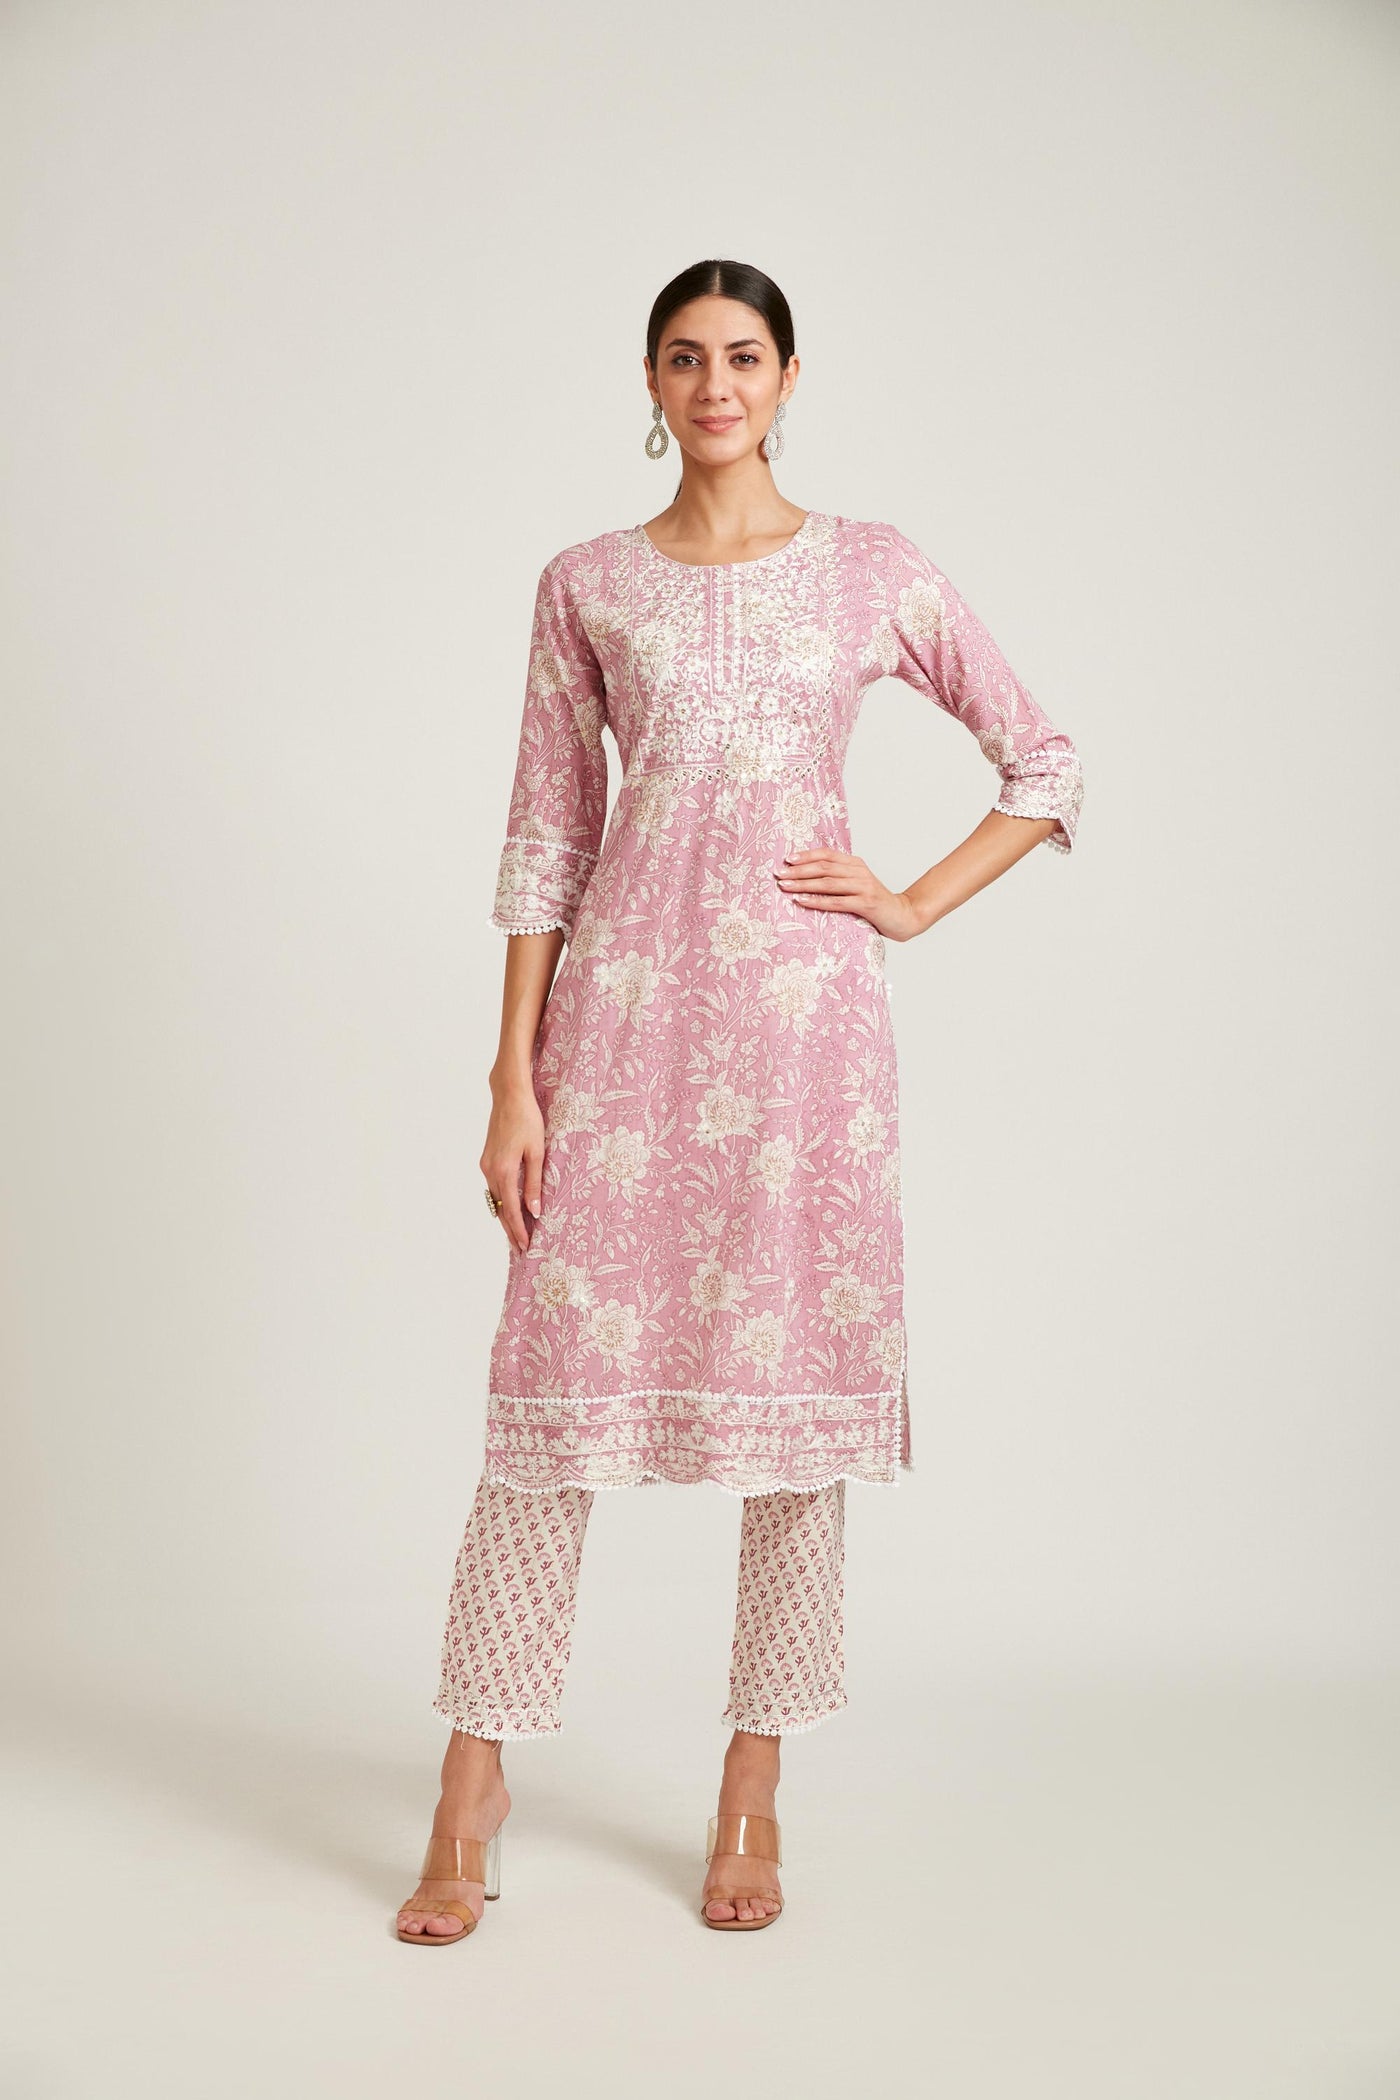 Neeru's Rose Pink Color Cotton Fabric Kurta Set